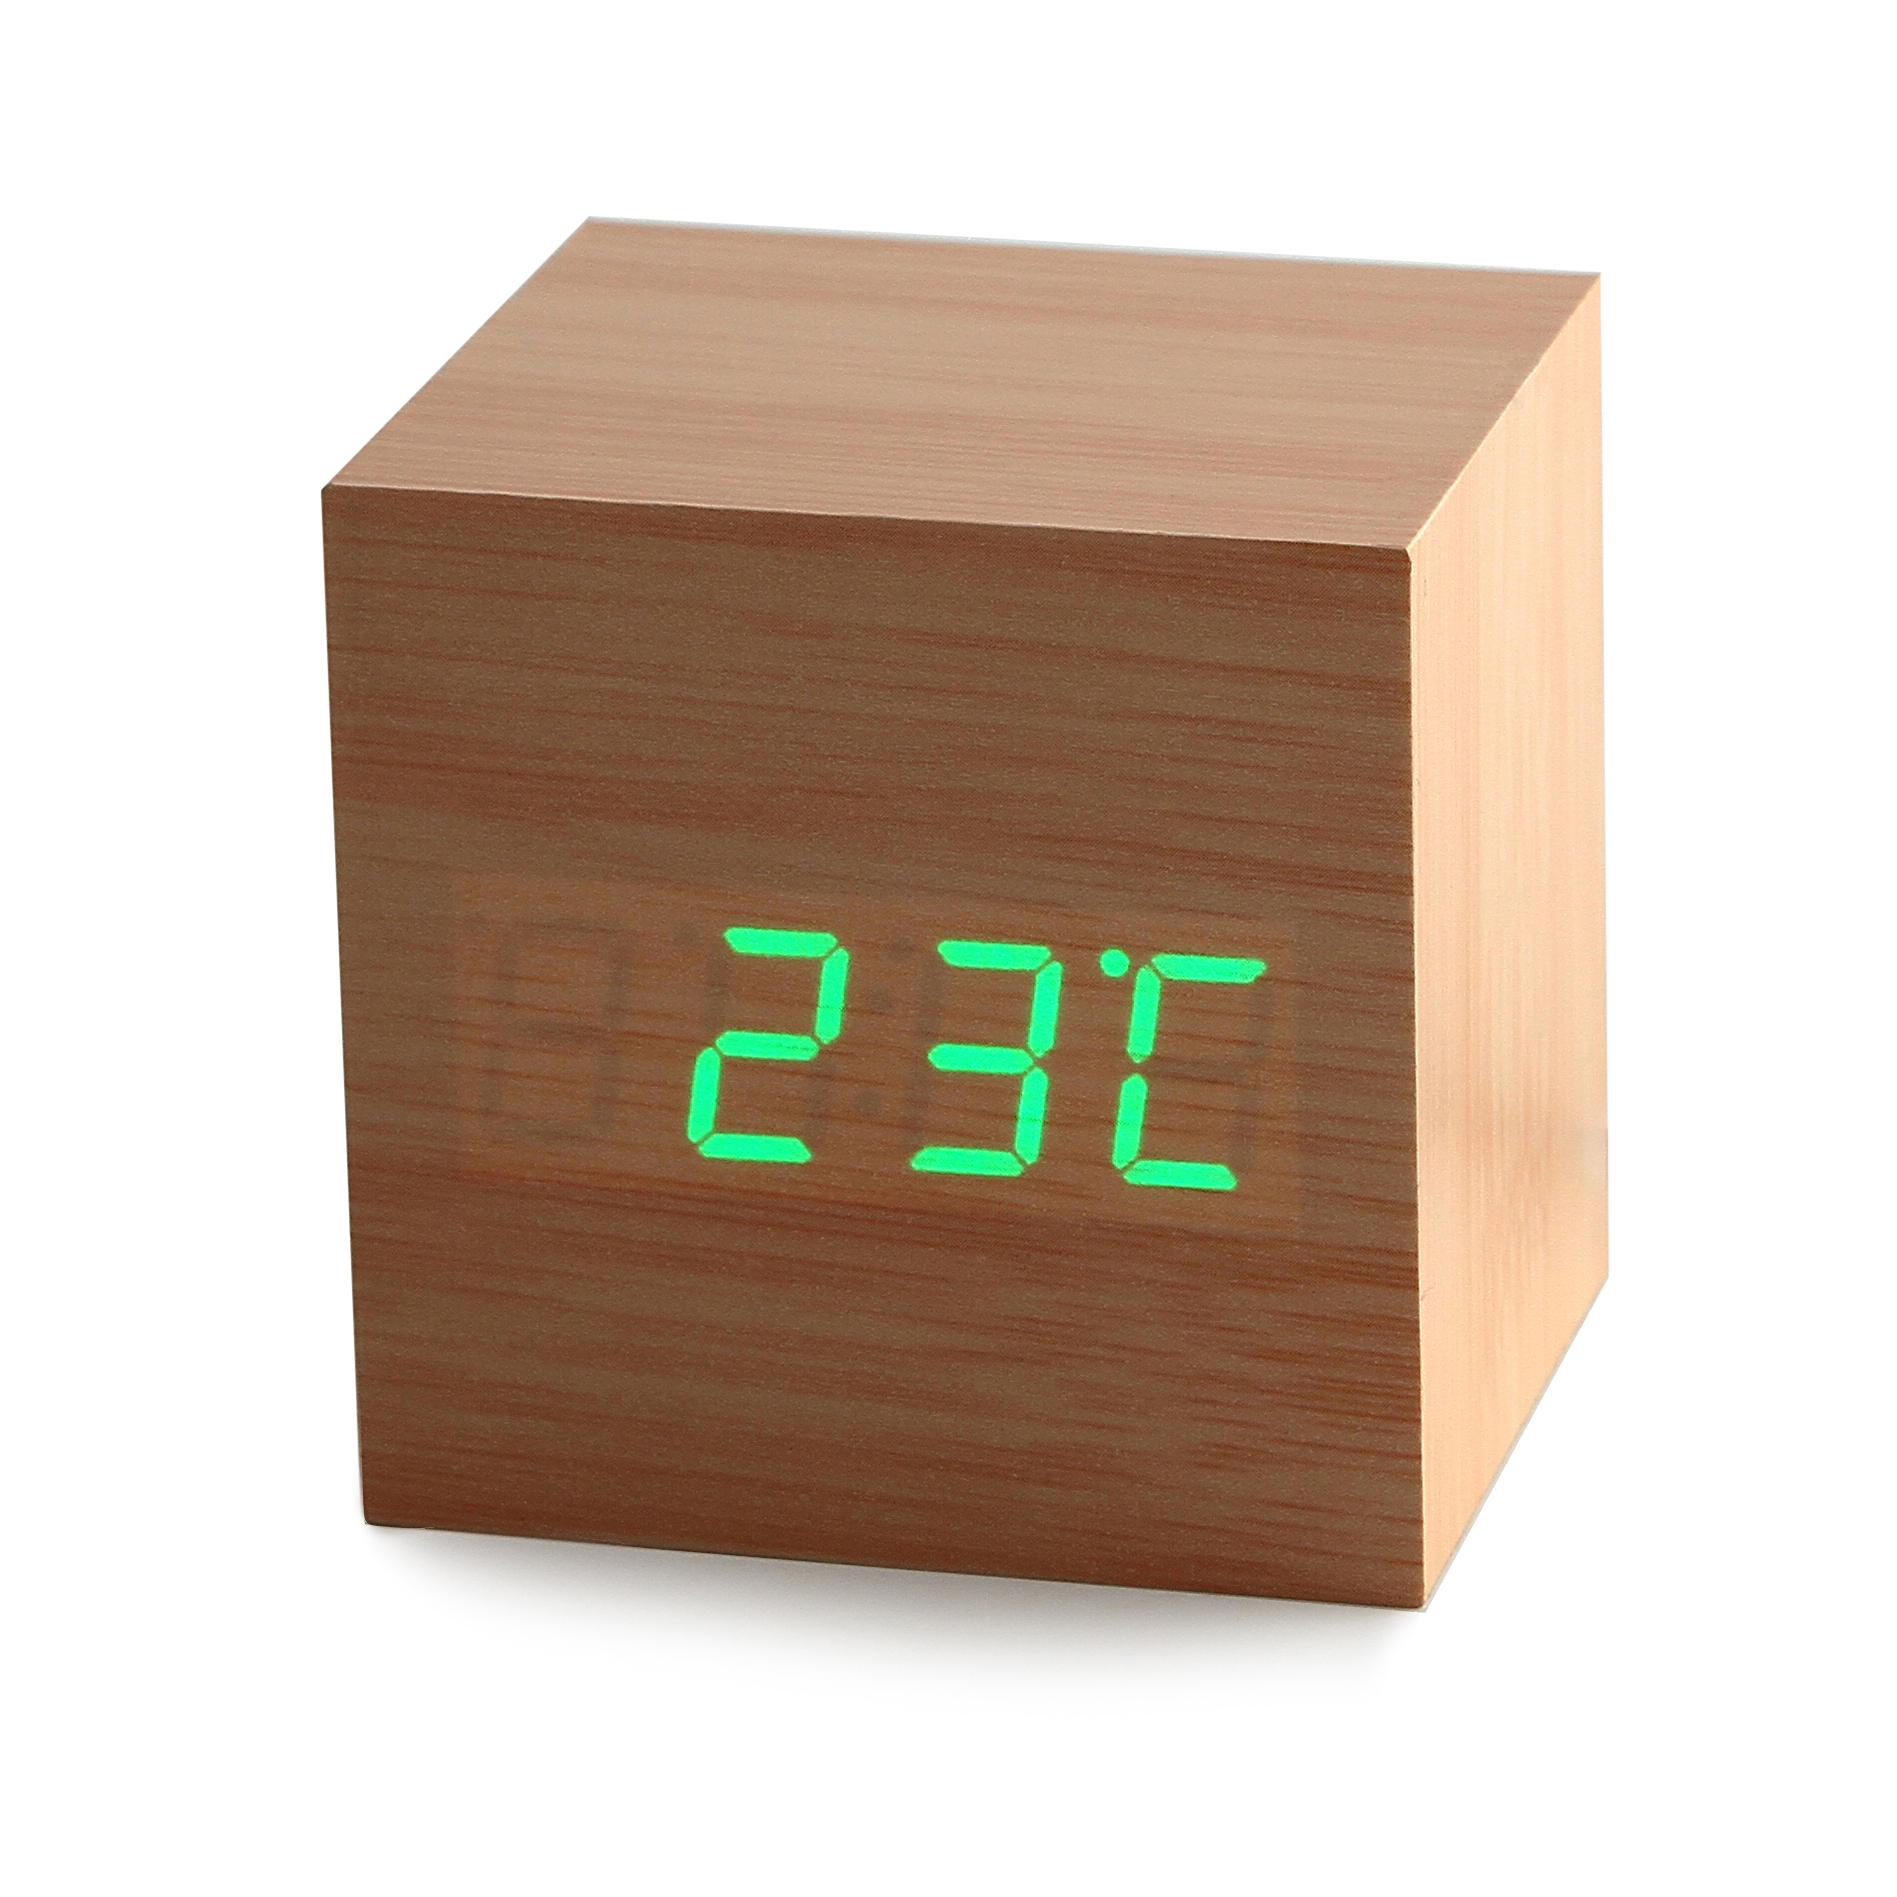 Фото 3 Часы будильник с показаниями температуры, даты и времени  CG wood clock green